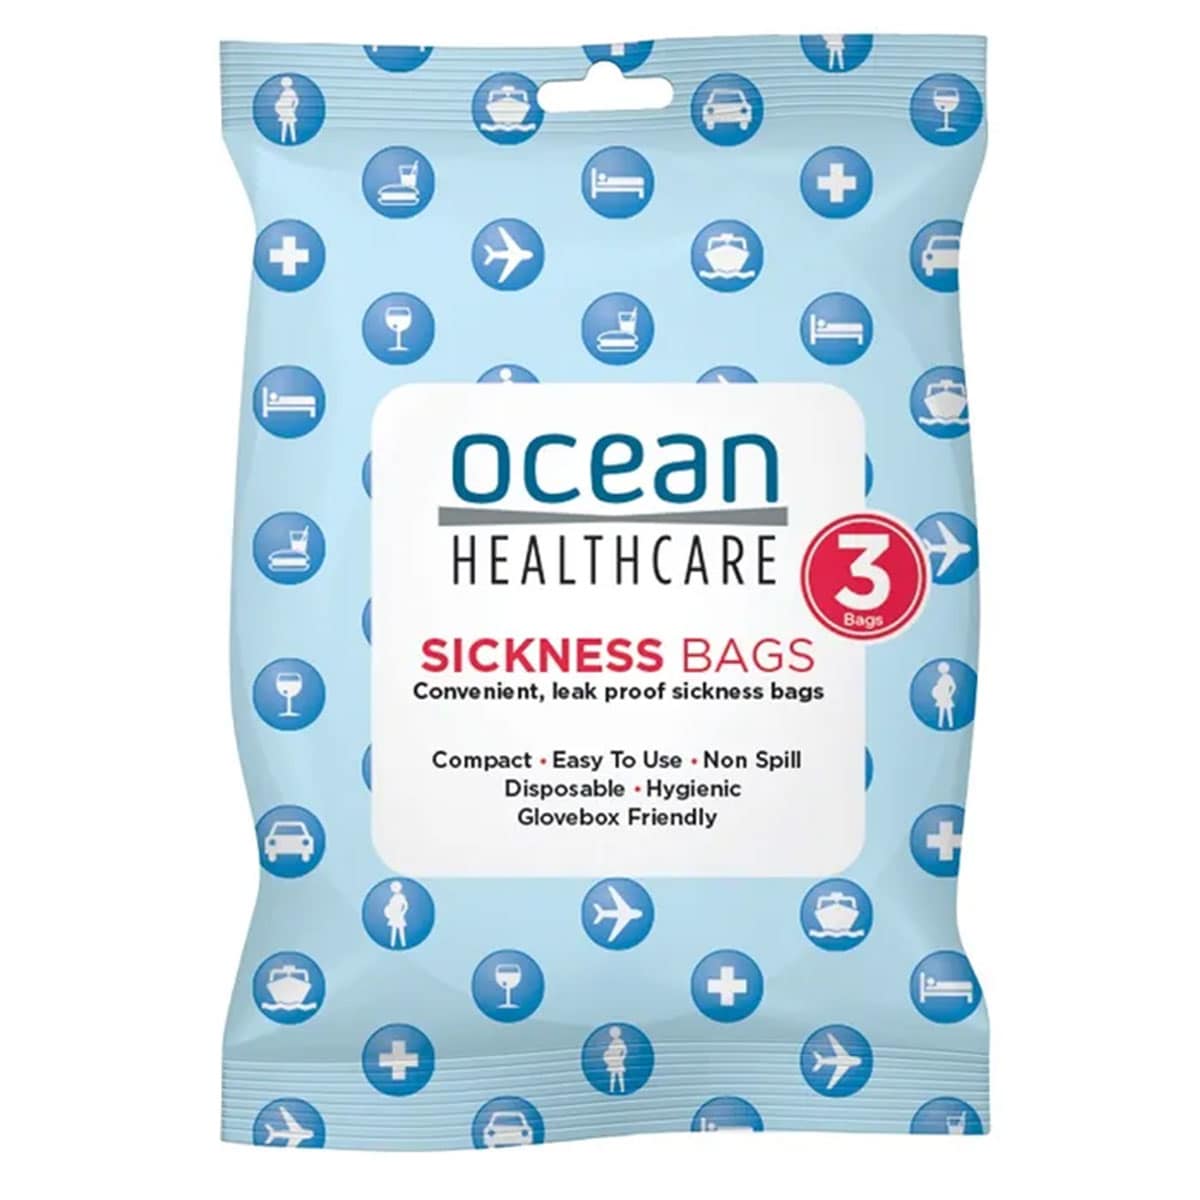 Ocean Healthcare Sickness Bags 3 Pack